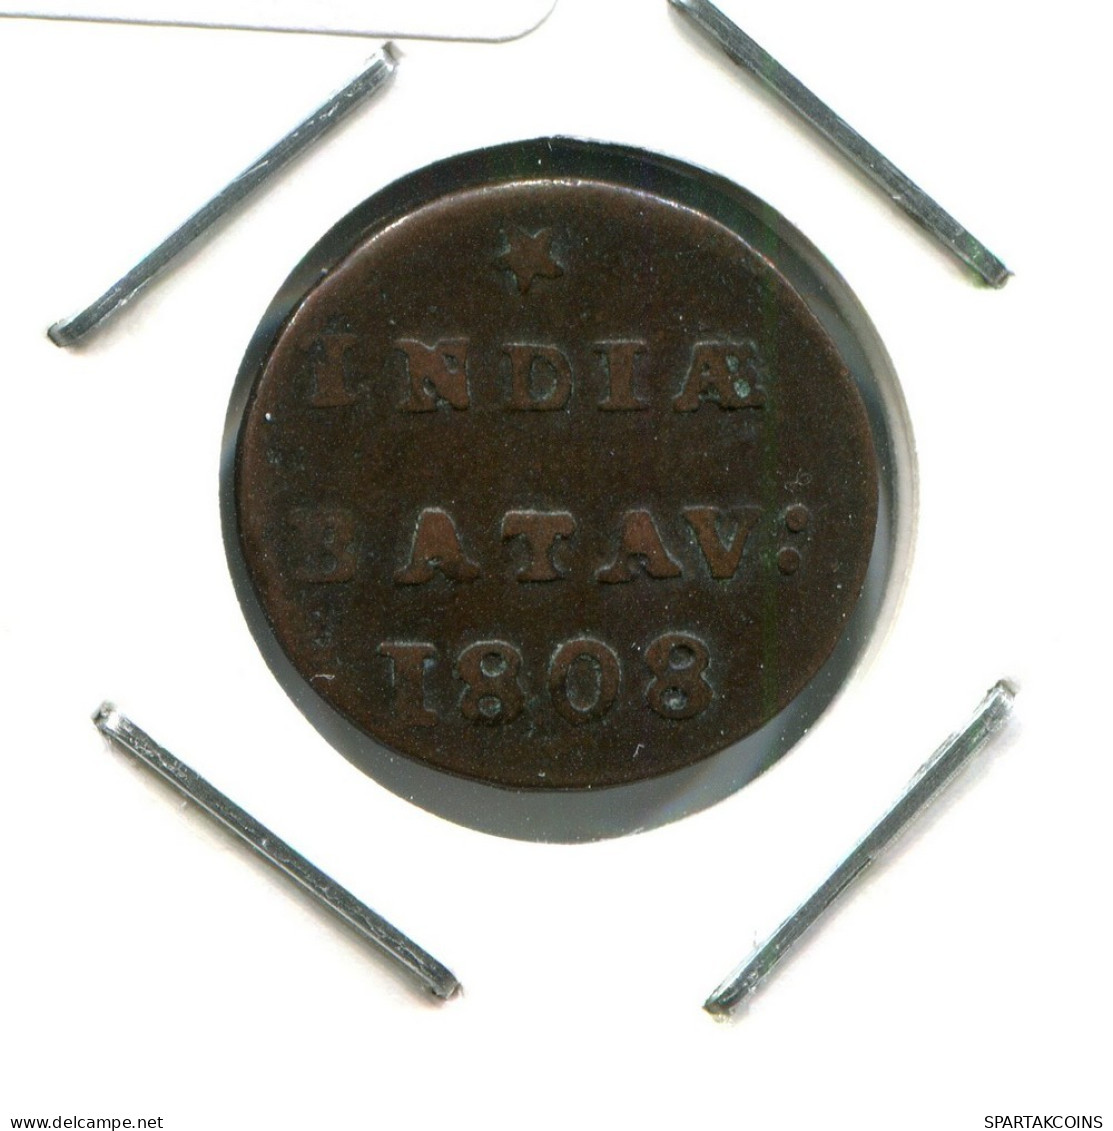 1808 BATAVIA VOC 1/2 DUIT NETHERLANDS INDIES Koloniale Münze #VOC2089.10.U.A - Niederländisch-Indien